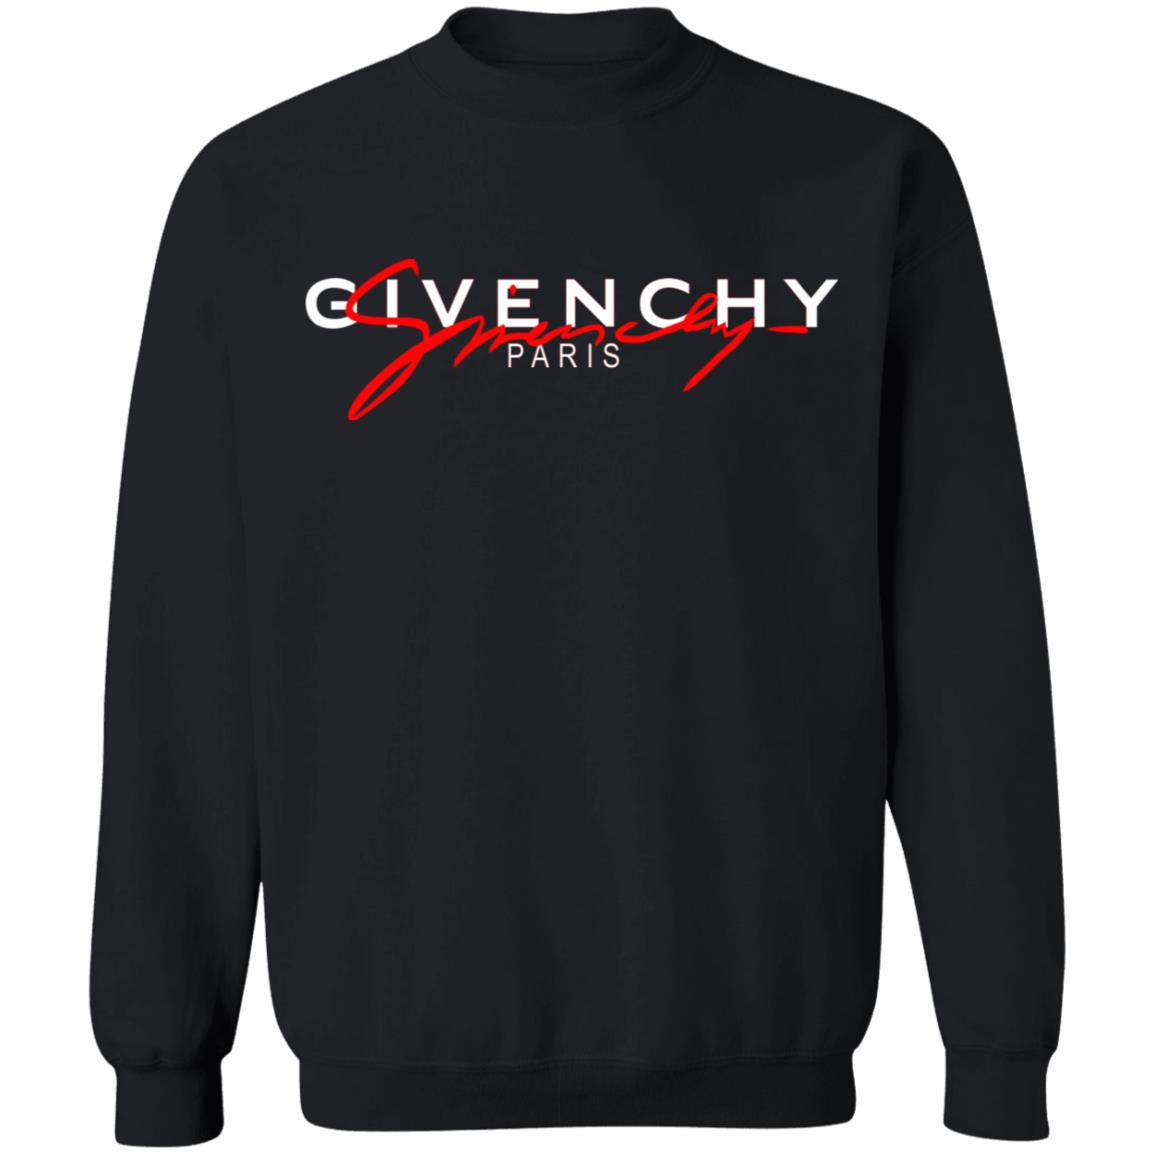 Givenchy Givenchy Paris T-Shirts, Hoodies, Sweater | El Real Tex-Mex